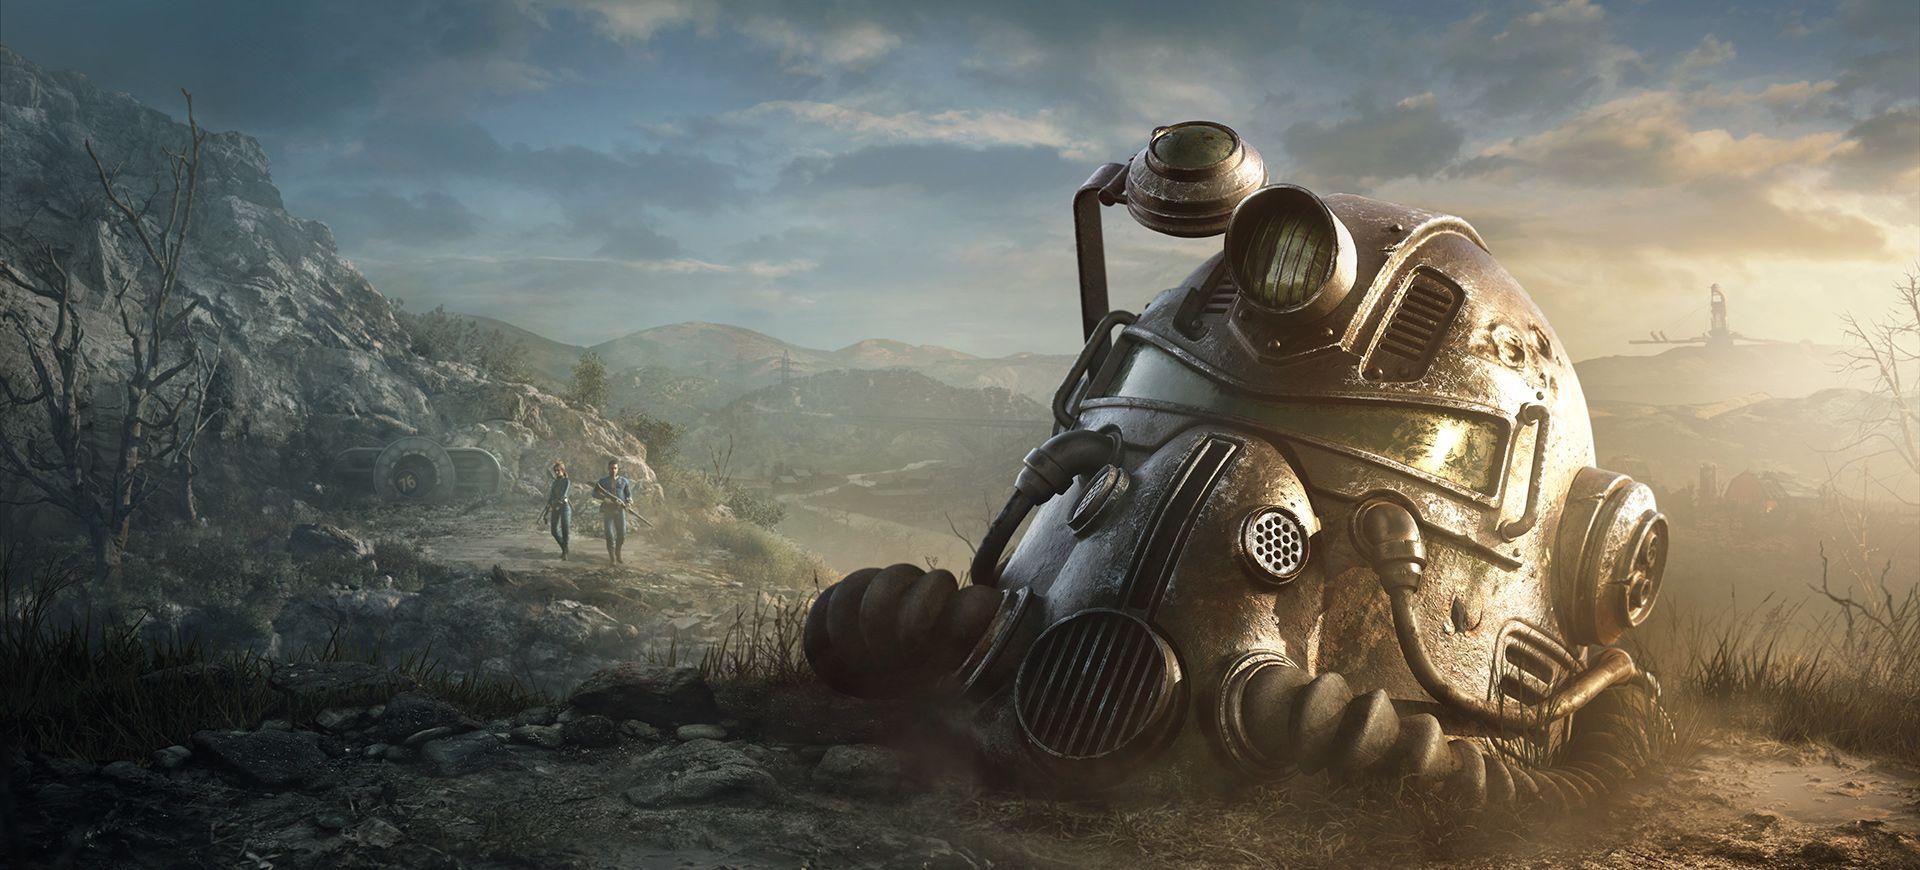 ¿Es Fallout 76 un juego multiplataforma y admite juego cruzado?